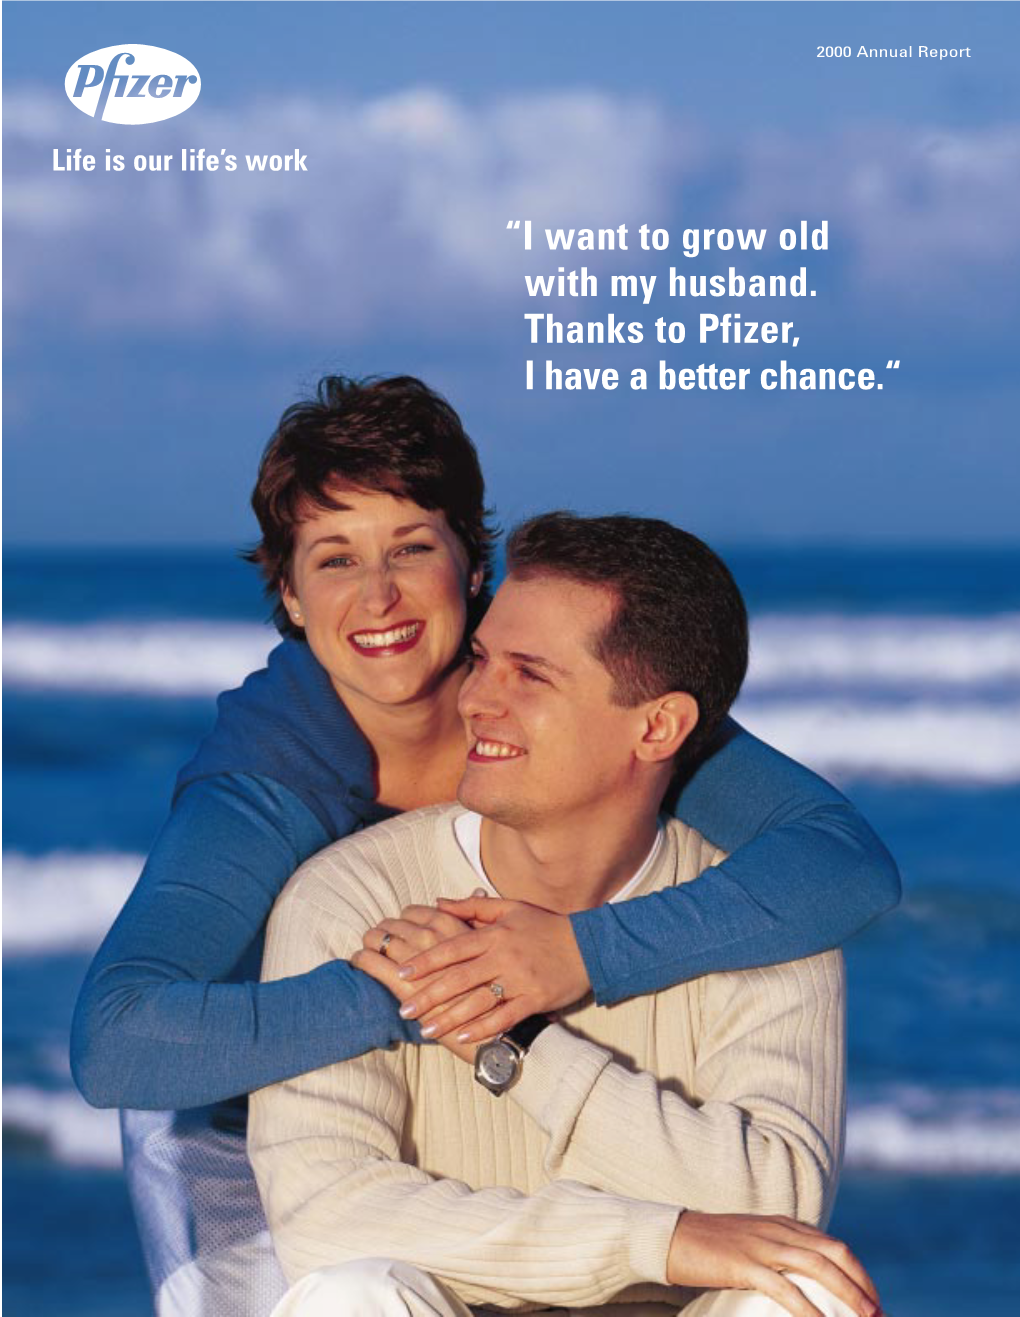 Pfizer 2000 Annual Report 2000 Annual Report